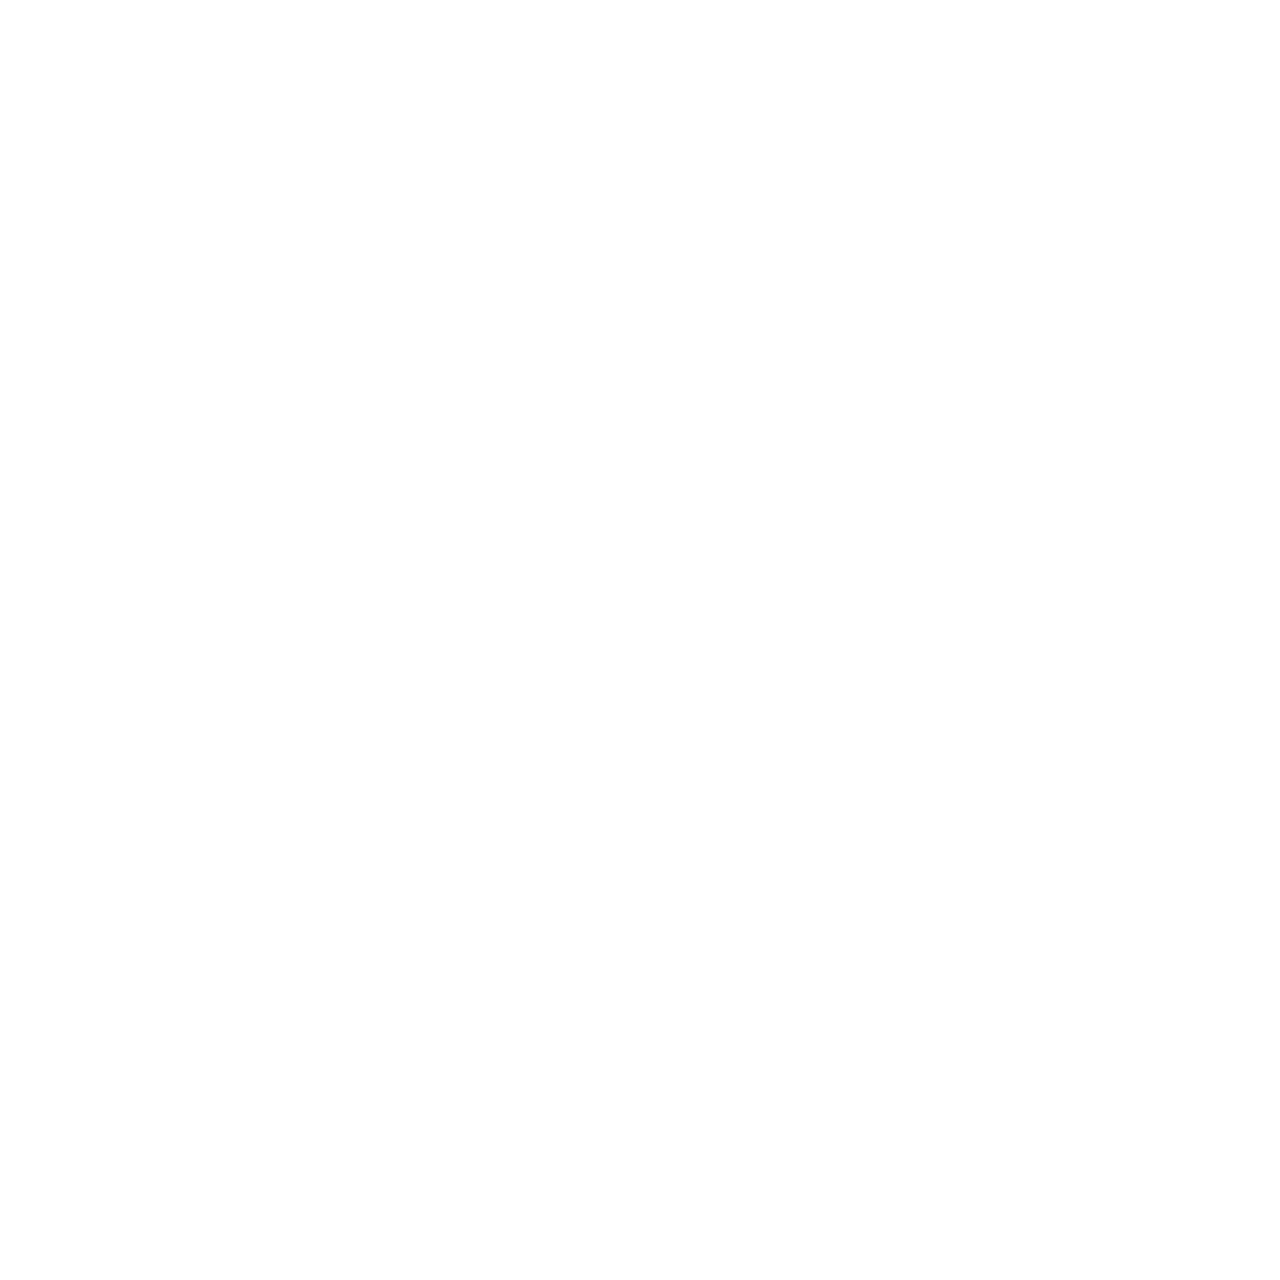 HawaBunga